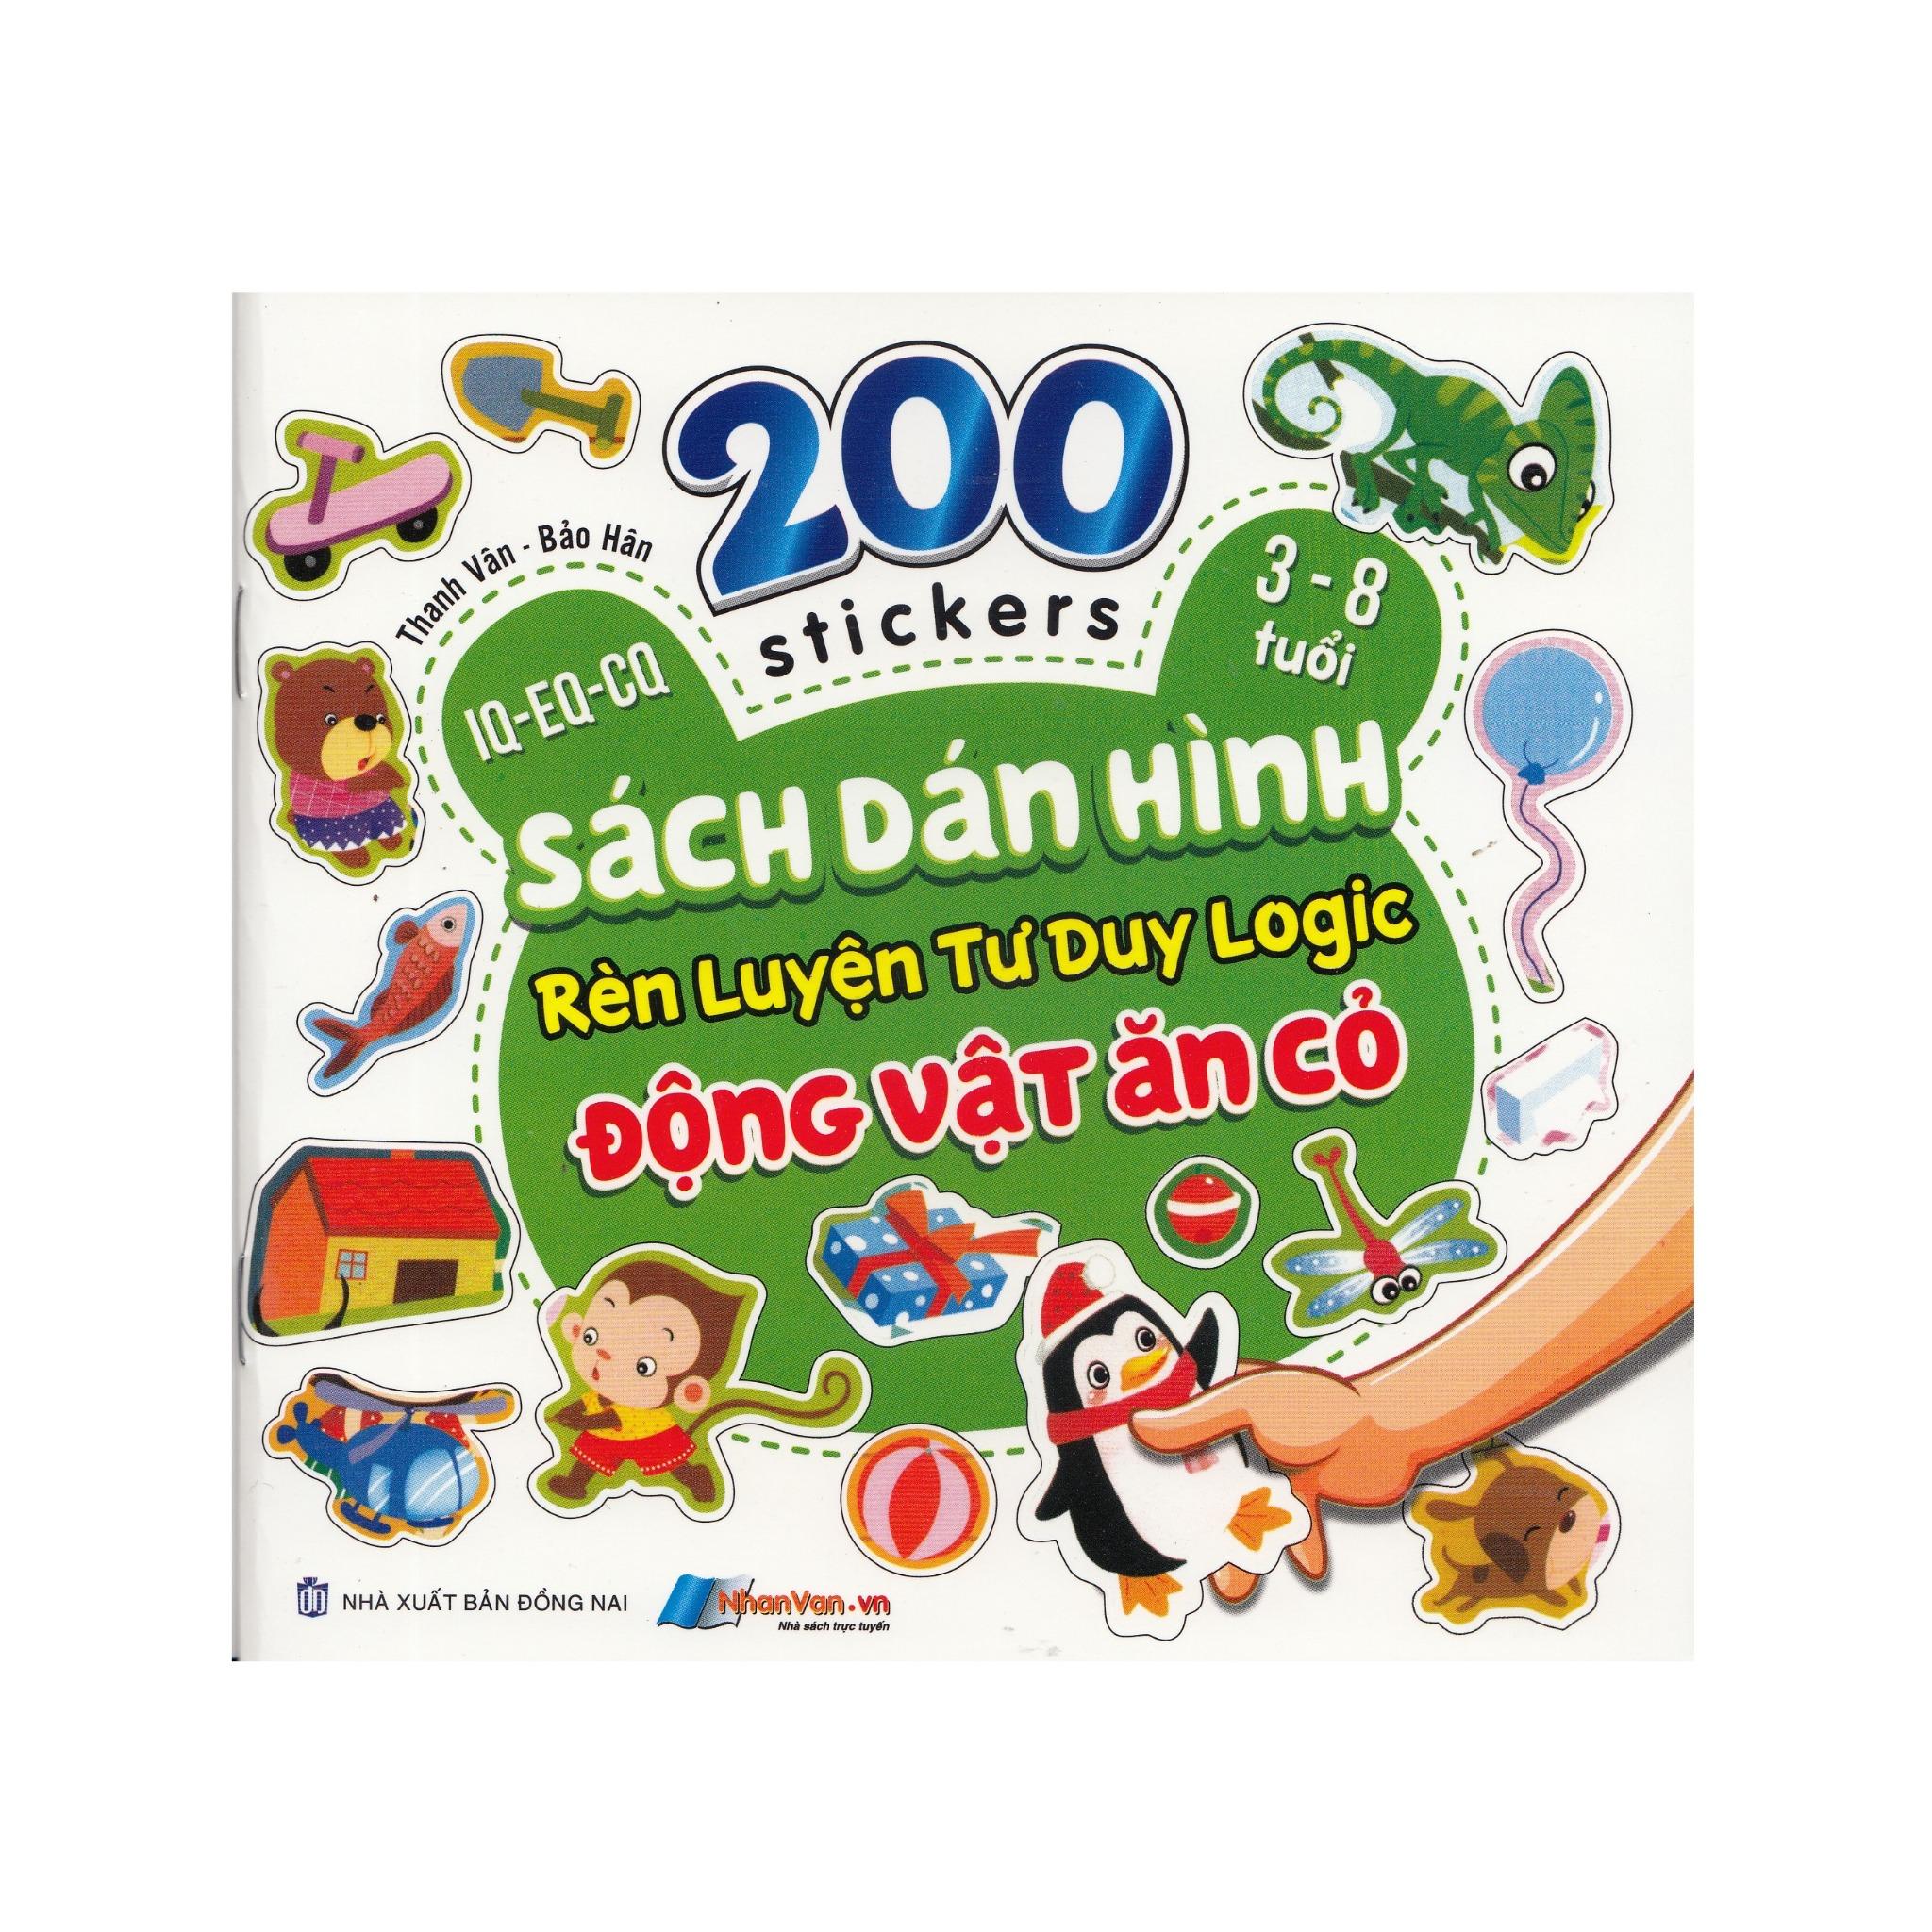 200 Stickers - 3-8 Tuổi - Sách Dán Hình Rèn Luyện Tư Duy Logic - Động Vật Ăn Cỏ